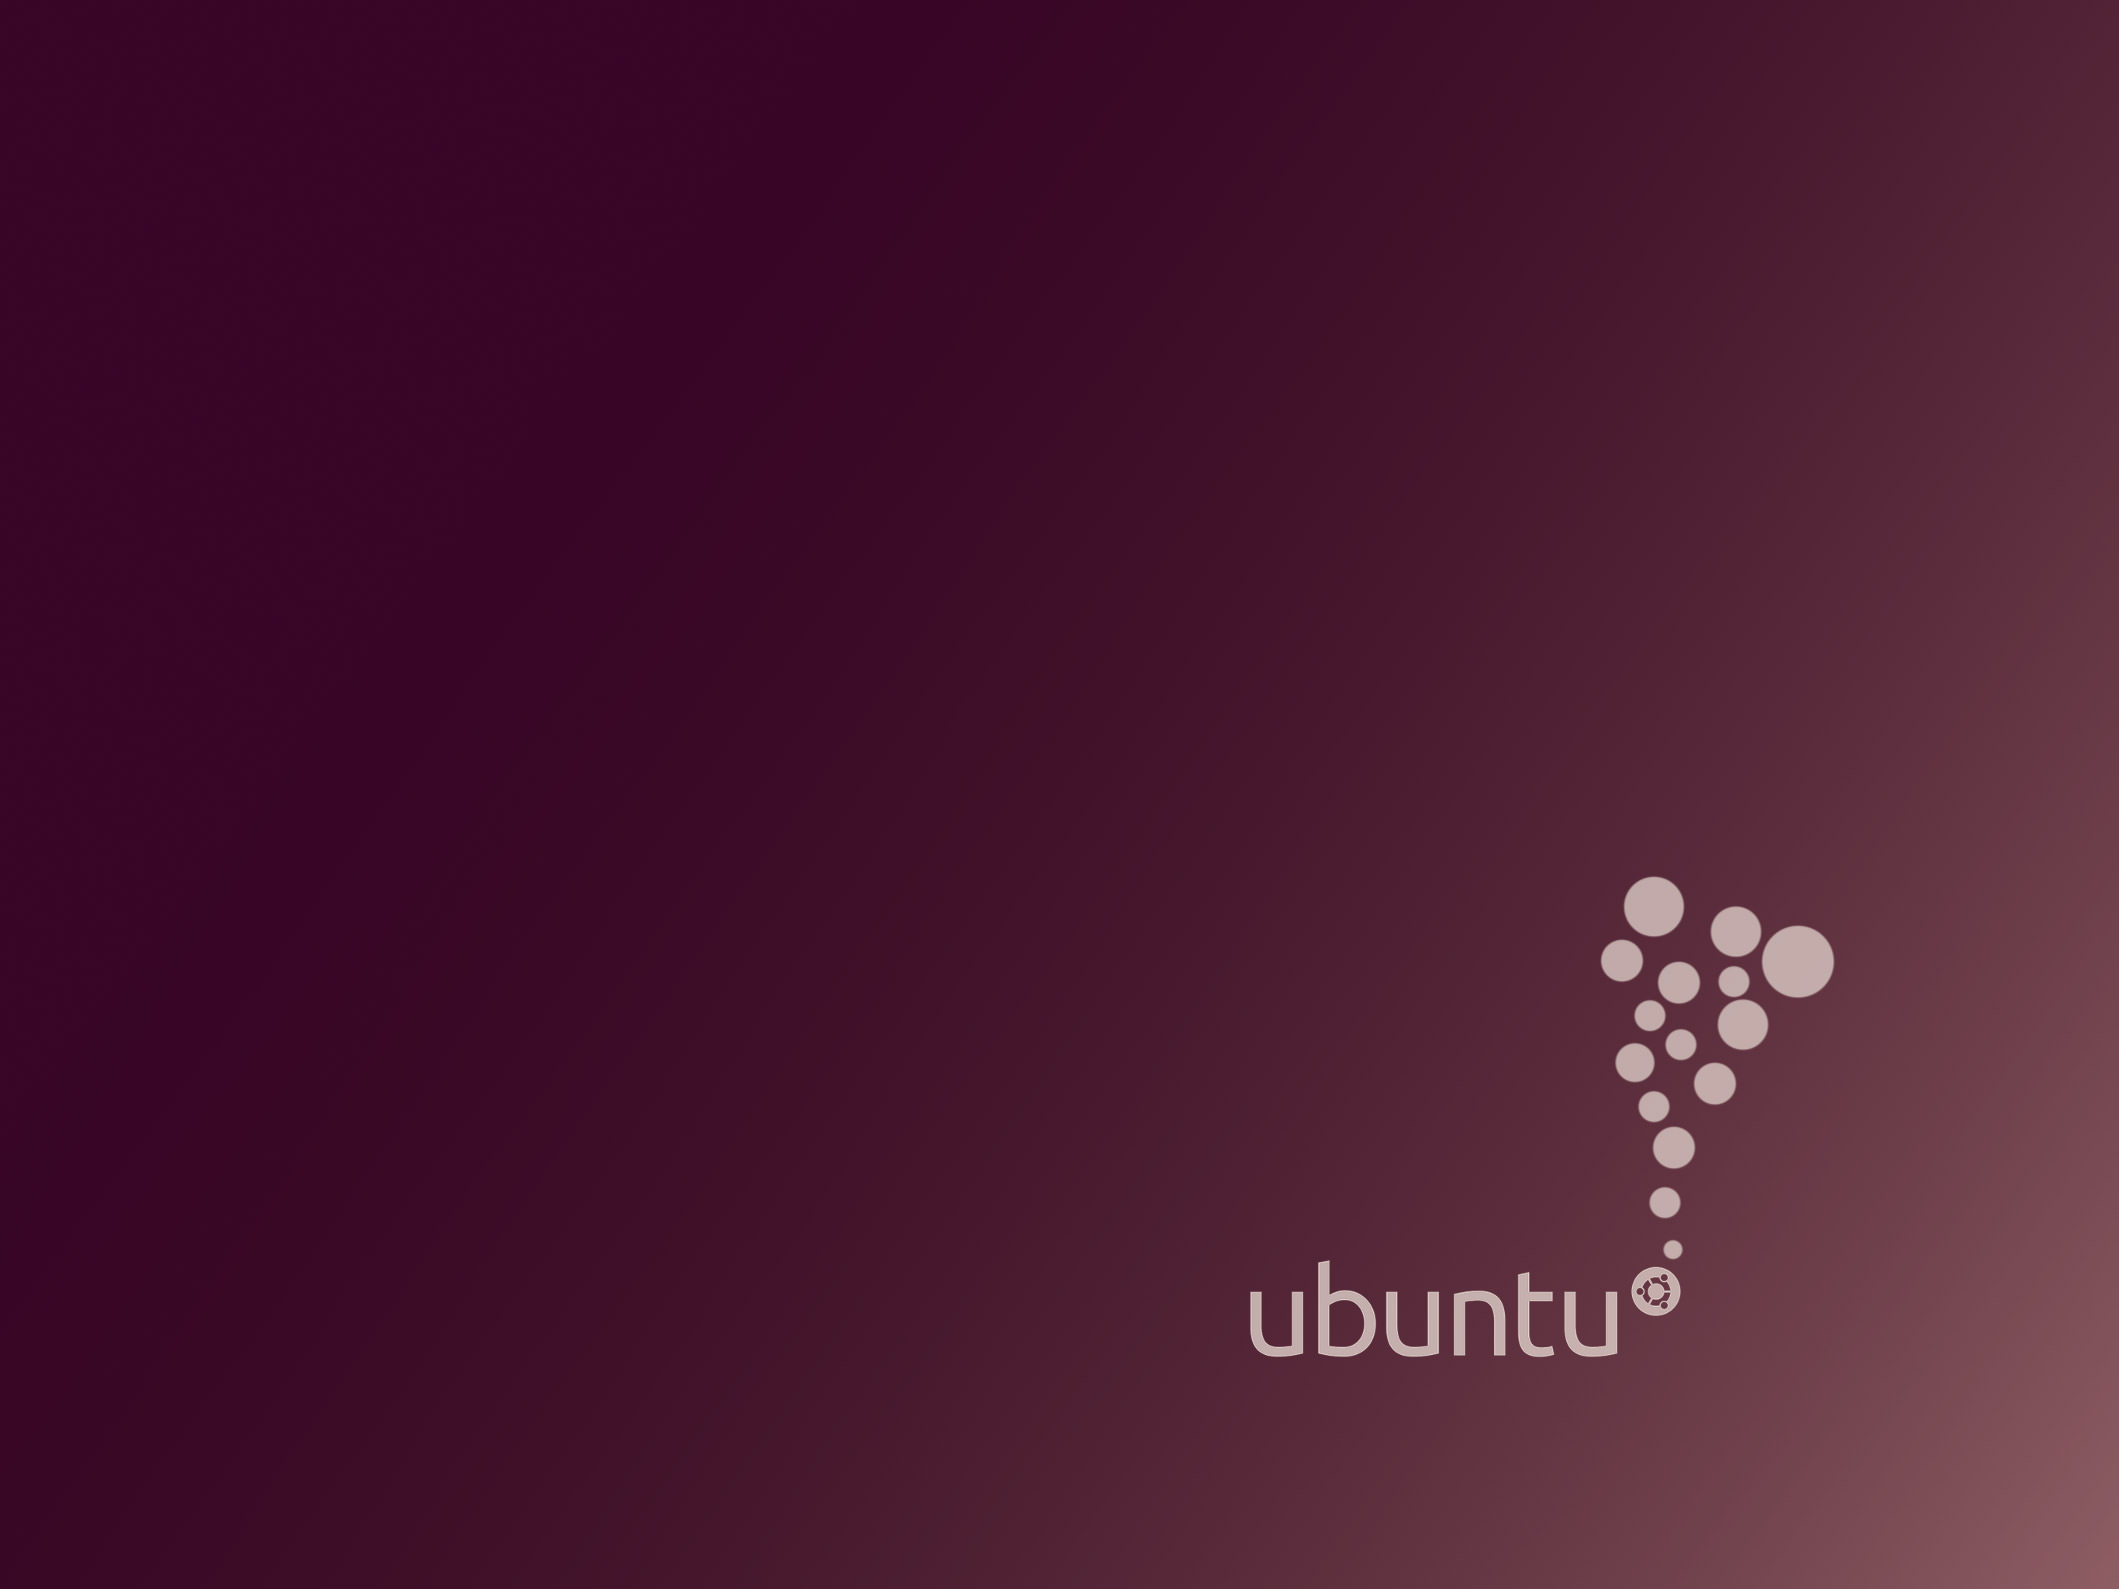 2119x1589 60 Beautiful Ubuntu Desktop Wallpapers Hongkiat